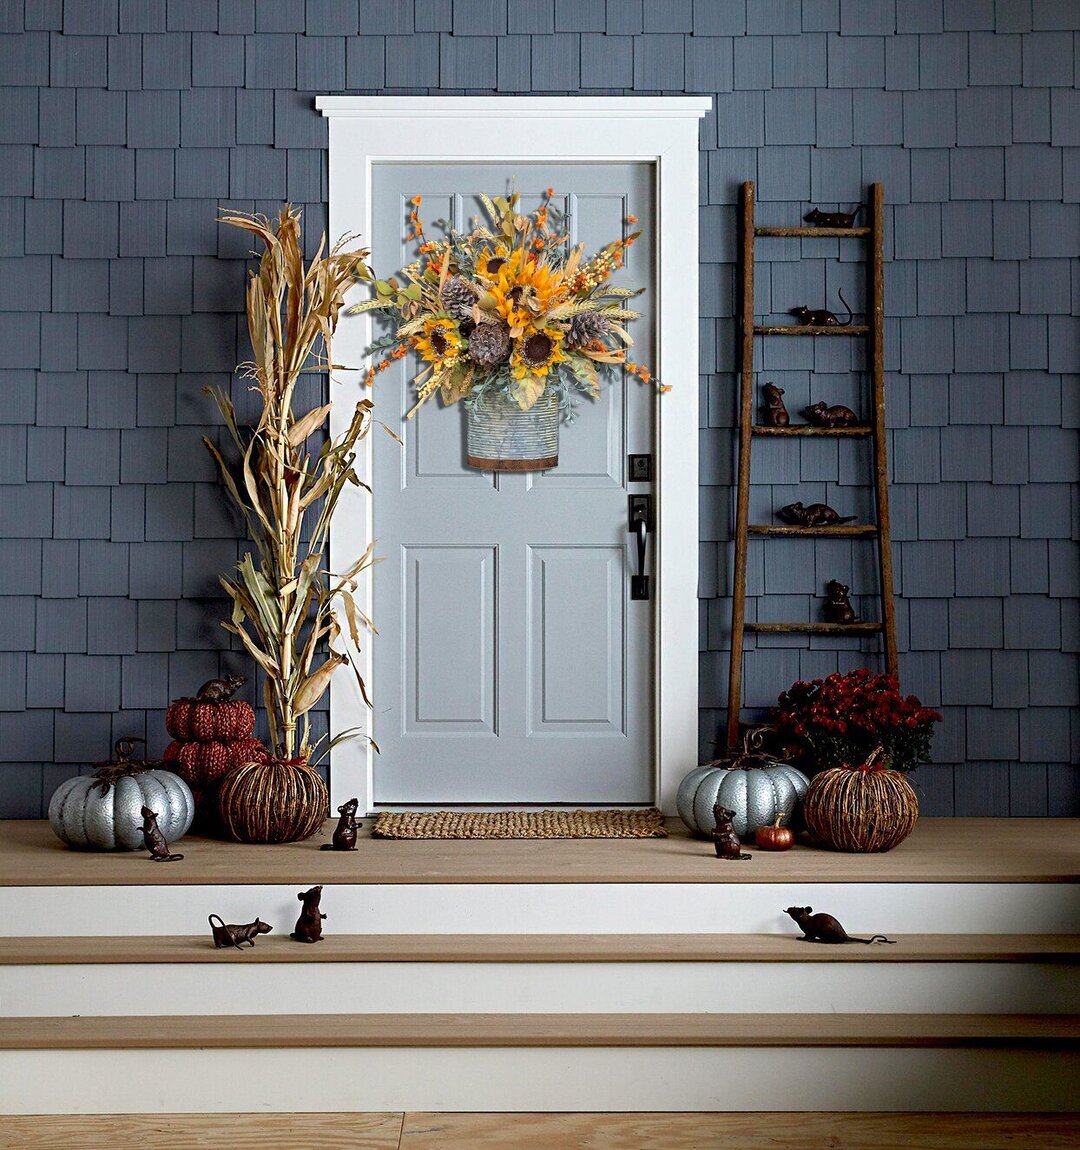 2021 Farmhouse Sunflower Door Wreath